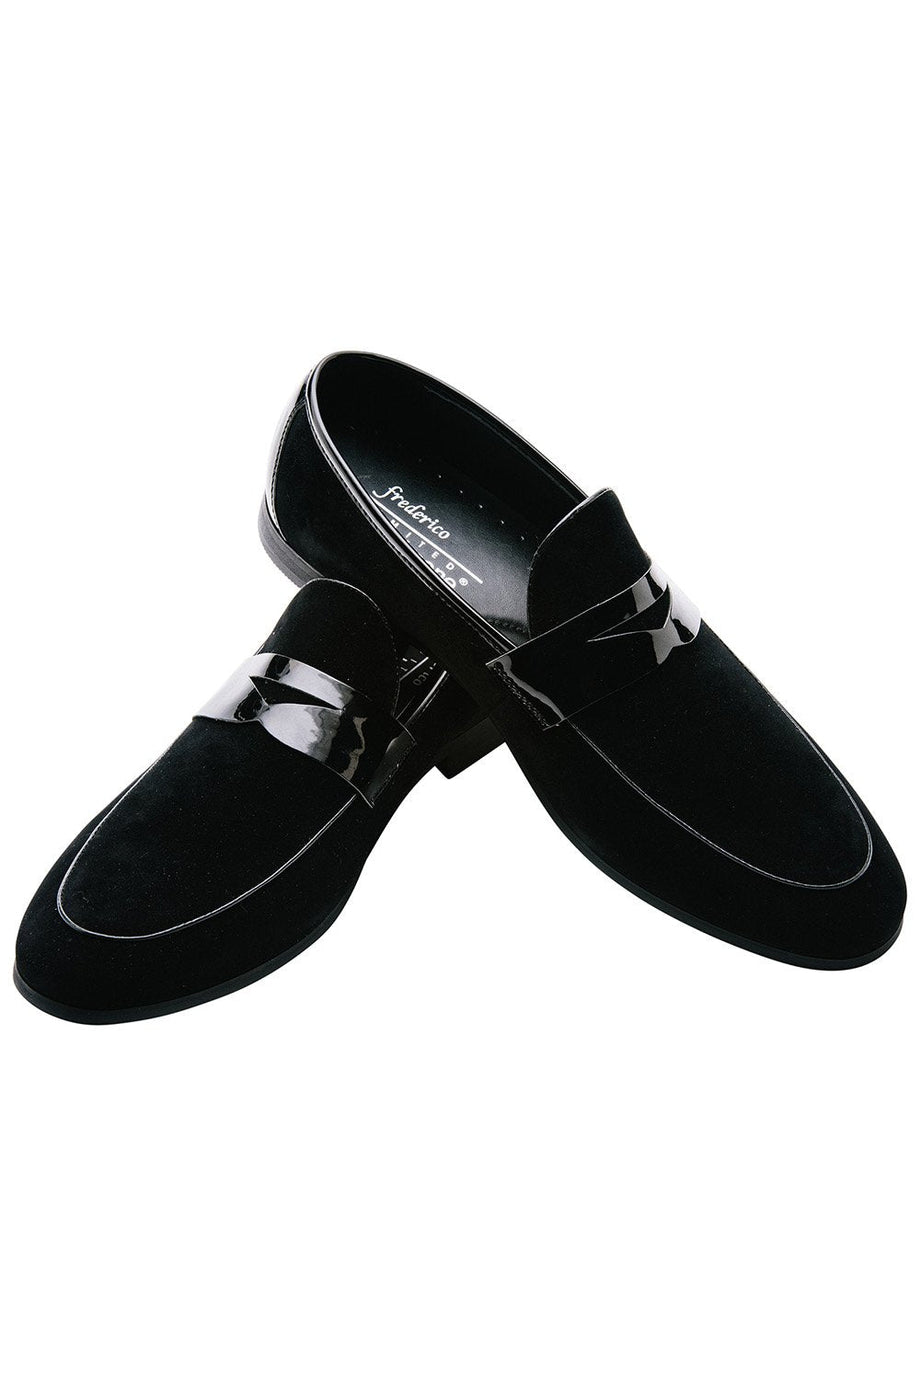 Frederico Leone "New Yorker" Black Suede Frederico Leone Tuxedo Shoes